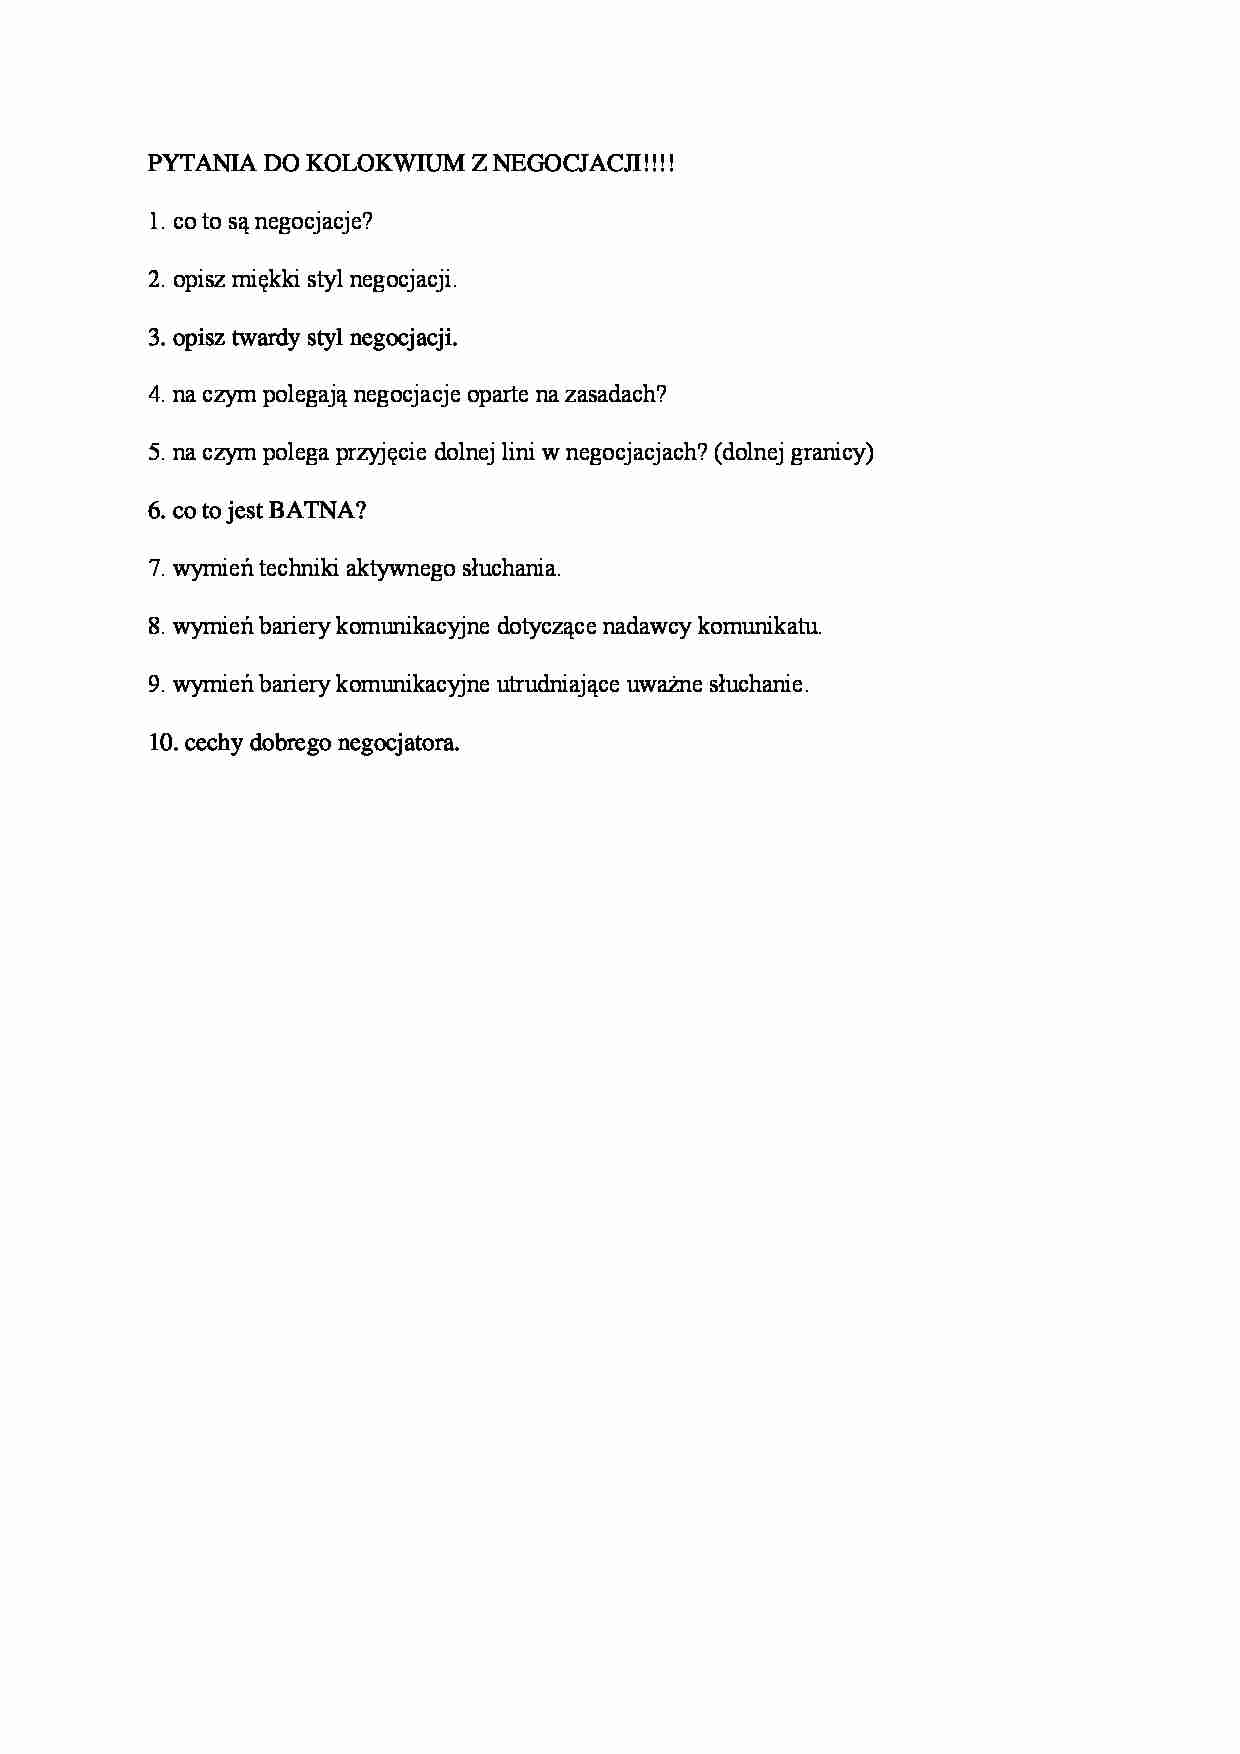 Negocjacje - pytania na kolokwium - strona 1